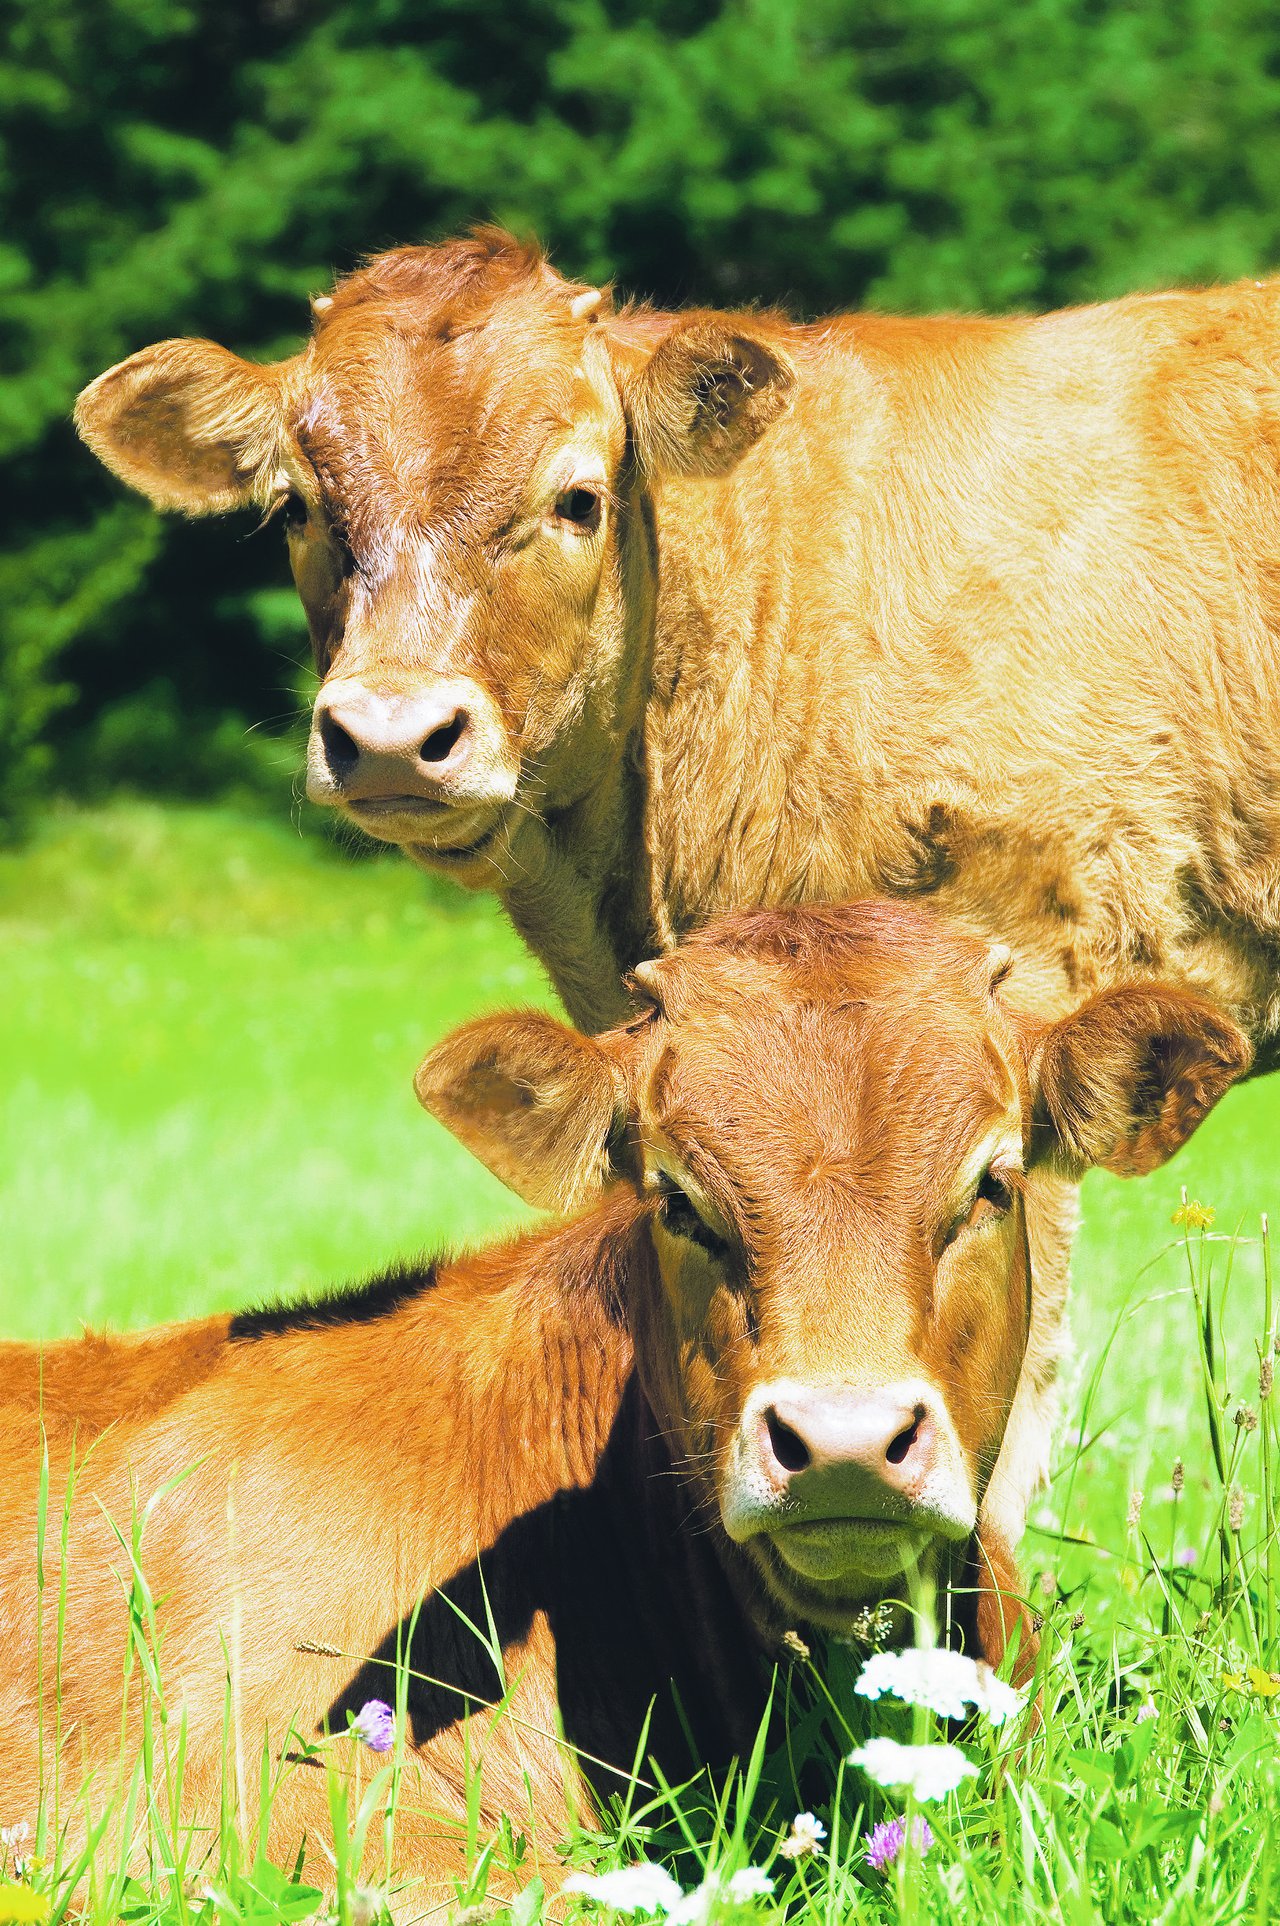 Weidemast ist eine Form der Rindviehmast, die für sich spricht und nicht lange erklärt werden muss. Das Rind frisst Gras auf der Weide und wandelt es in gutes Rindfleisch um. (Bild SBV)